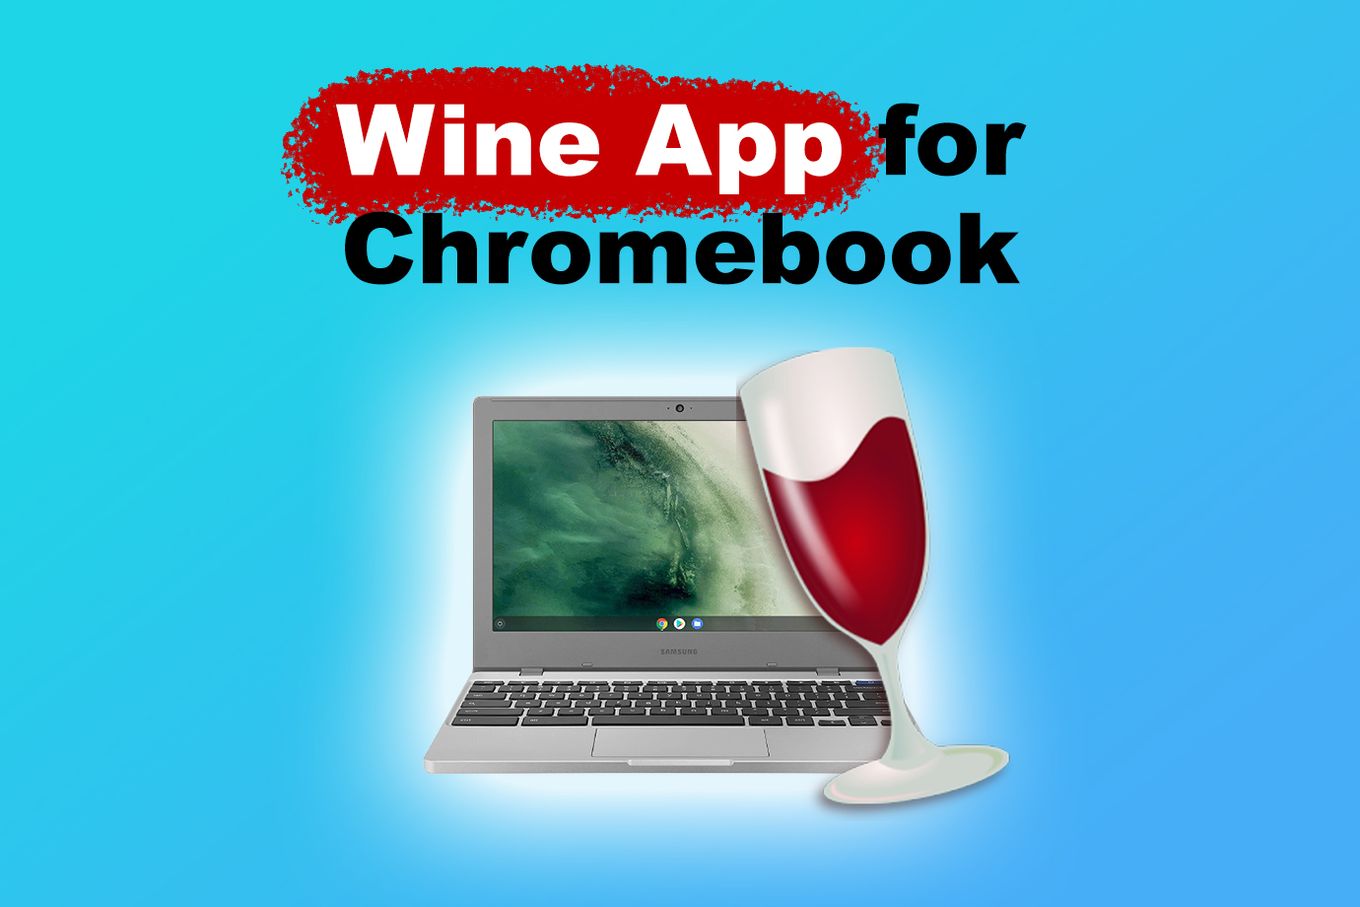 Wine App for Chromebook